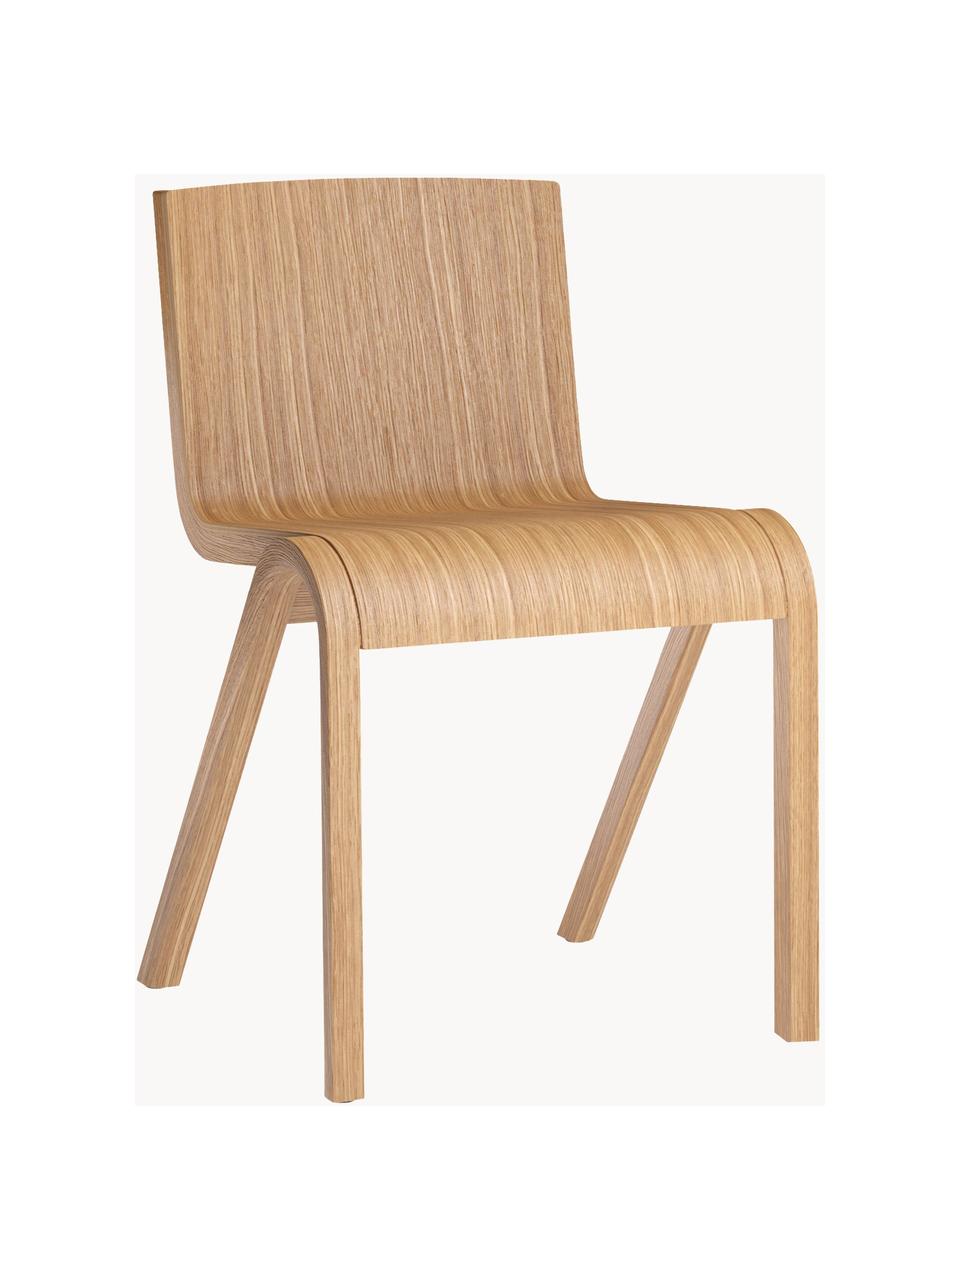 Židle z dubového dřeva Ready Dinning, Světlé dubové dřevo, Š 47 cm, H 50 cm